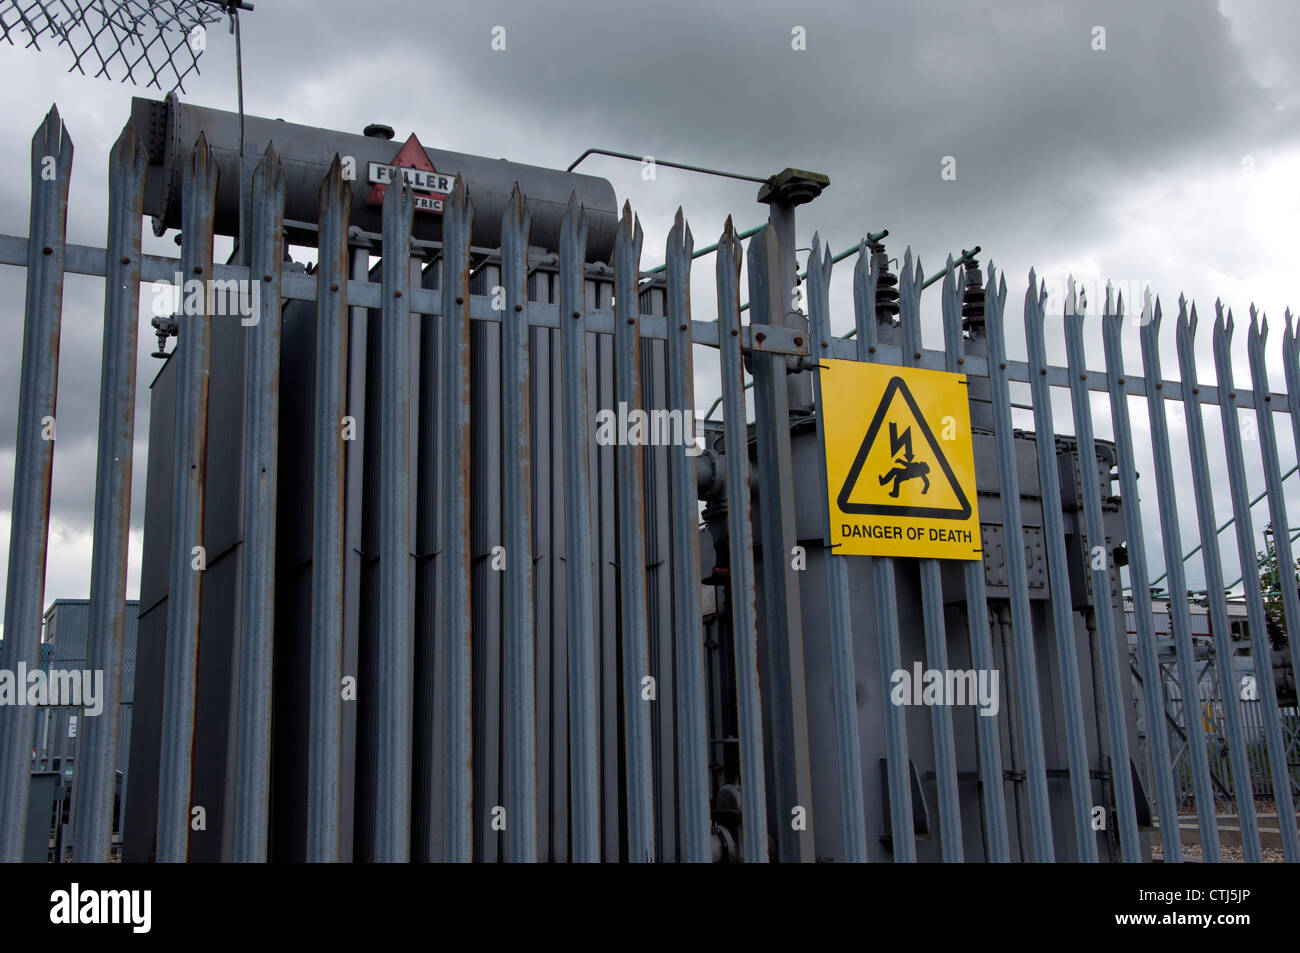 Electrical substation “danger of death” sign danger Stock Photo